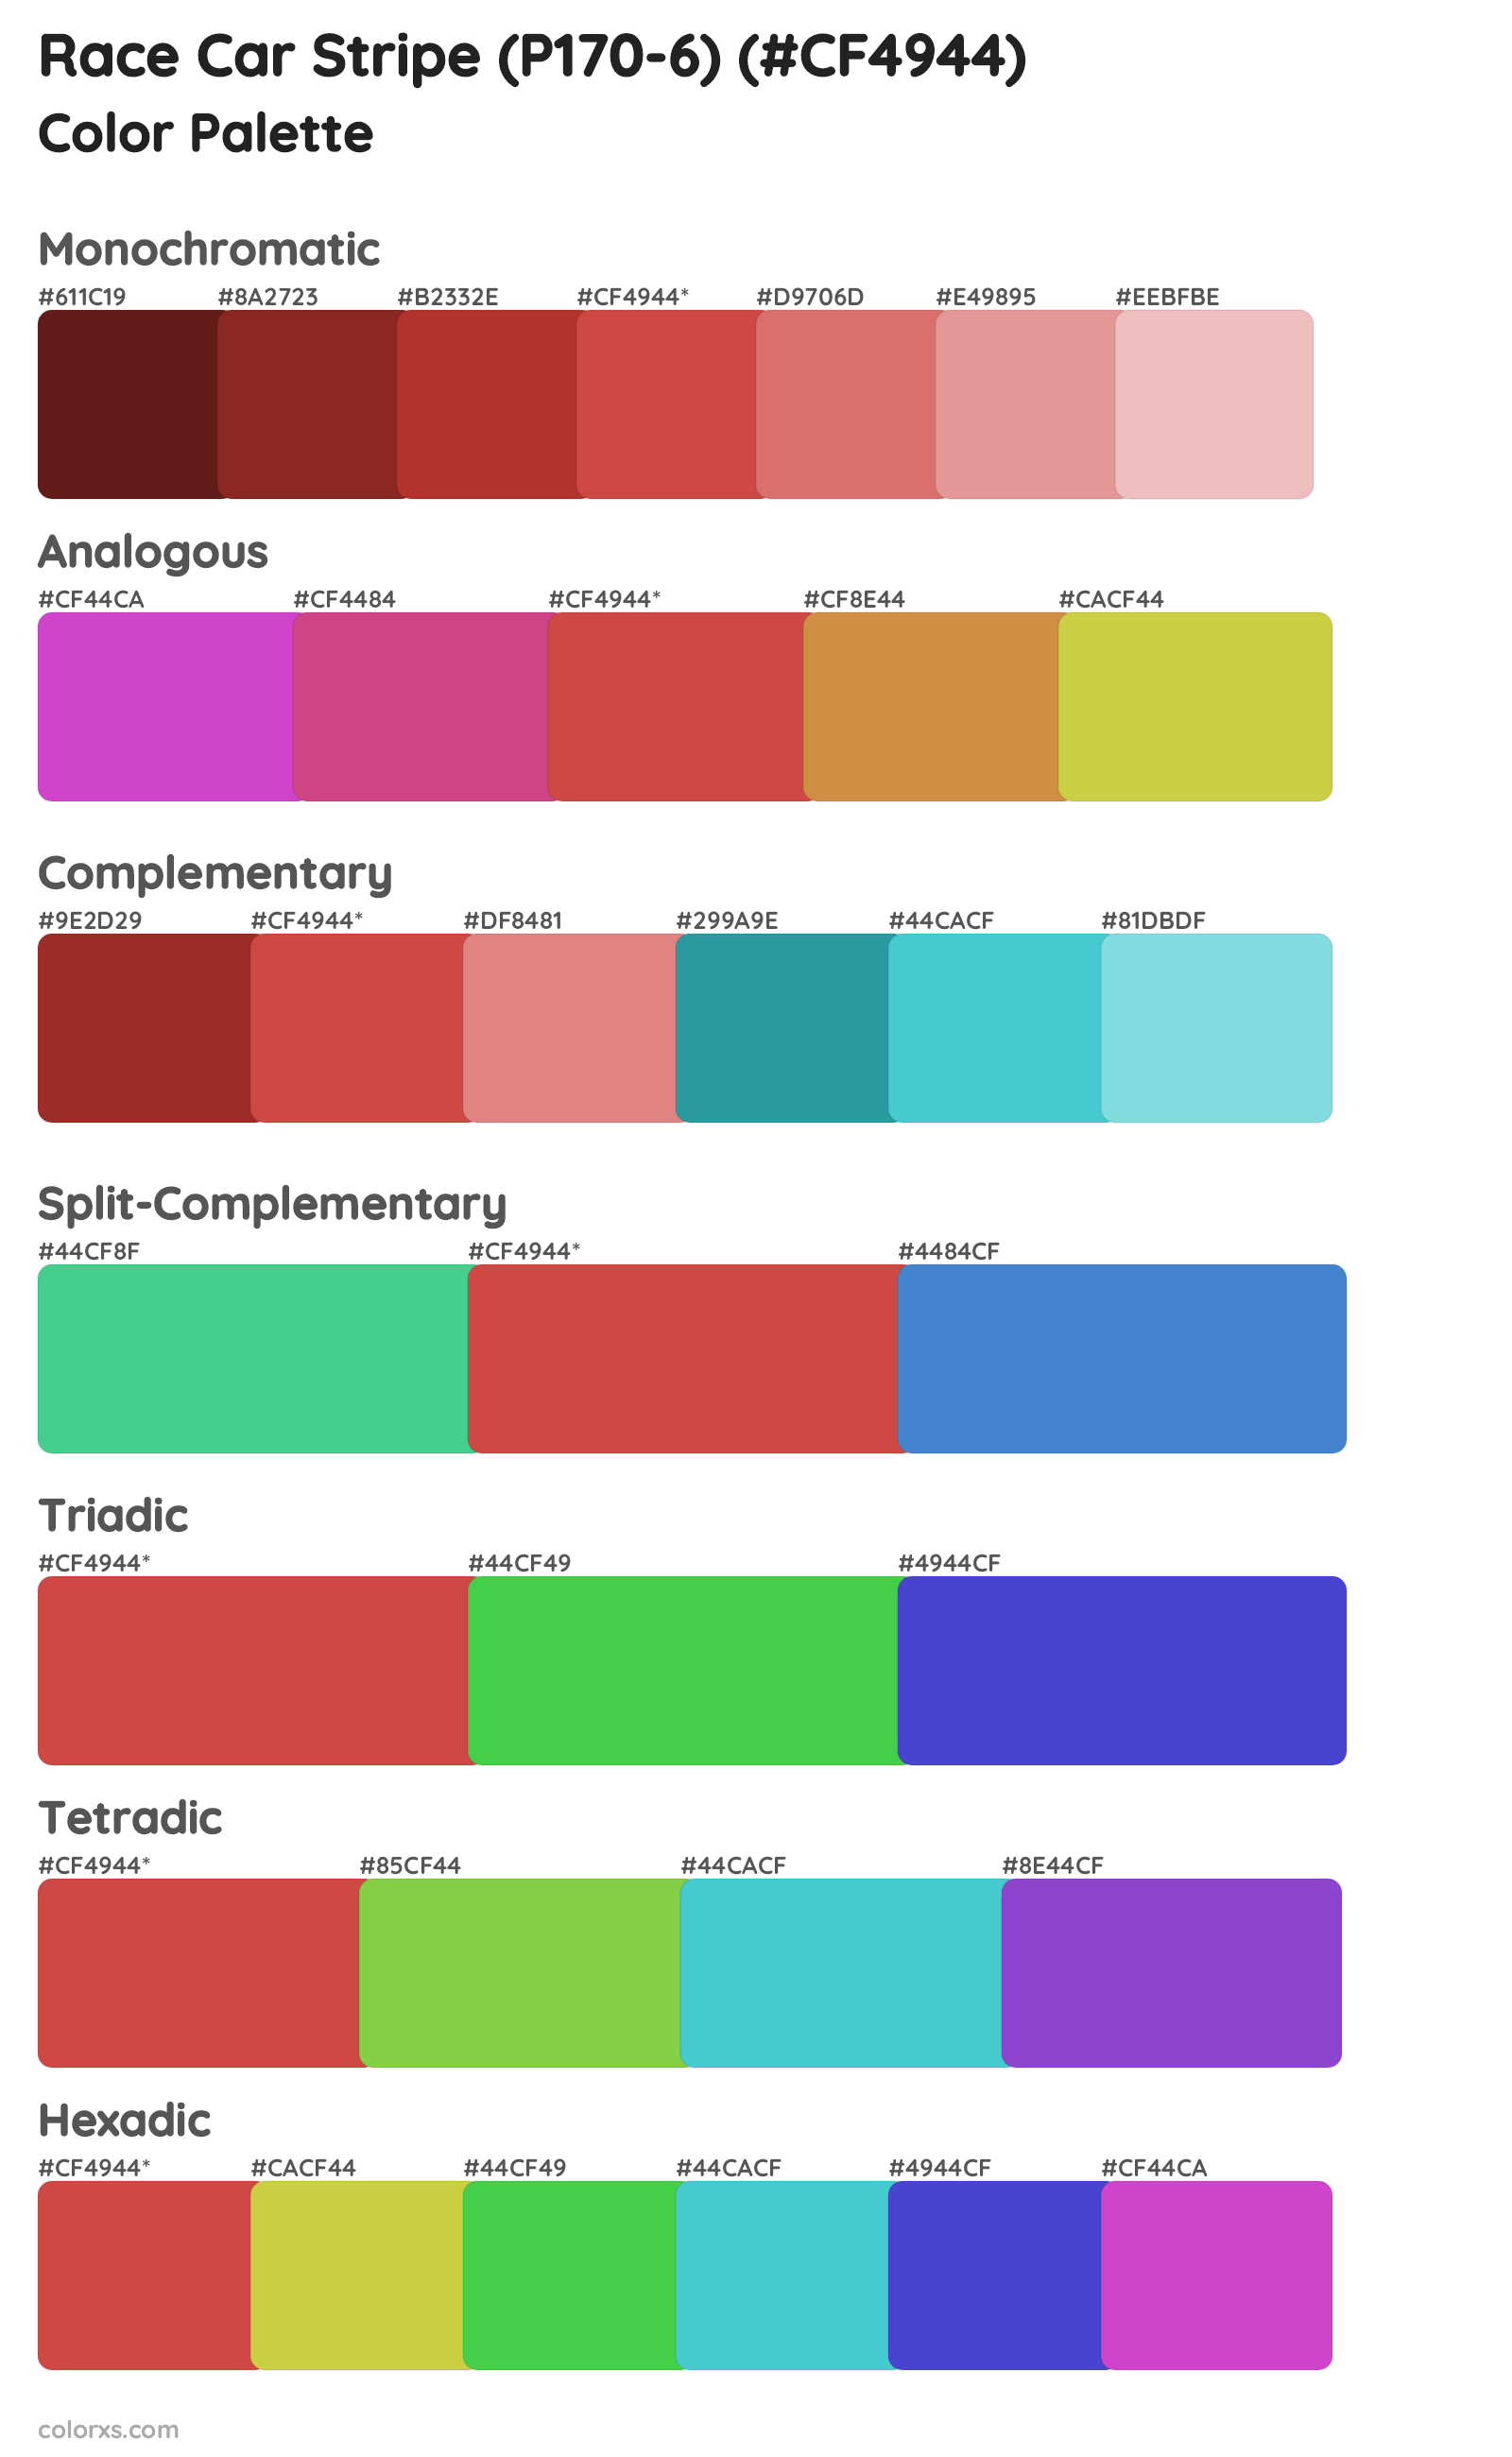 Race Car Stripe (P170-6) Color Scheme Palettes